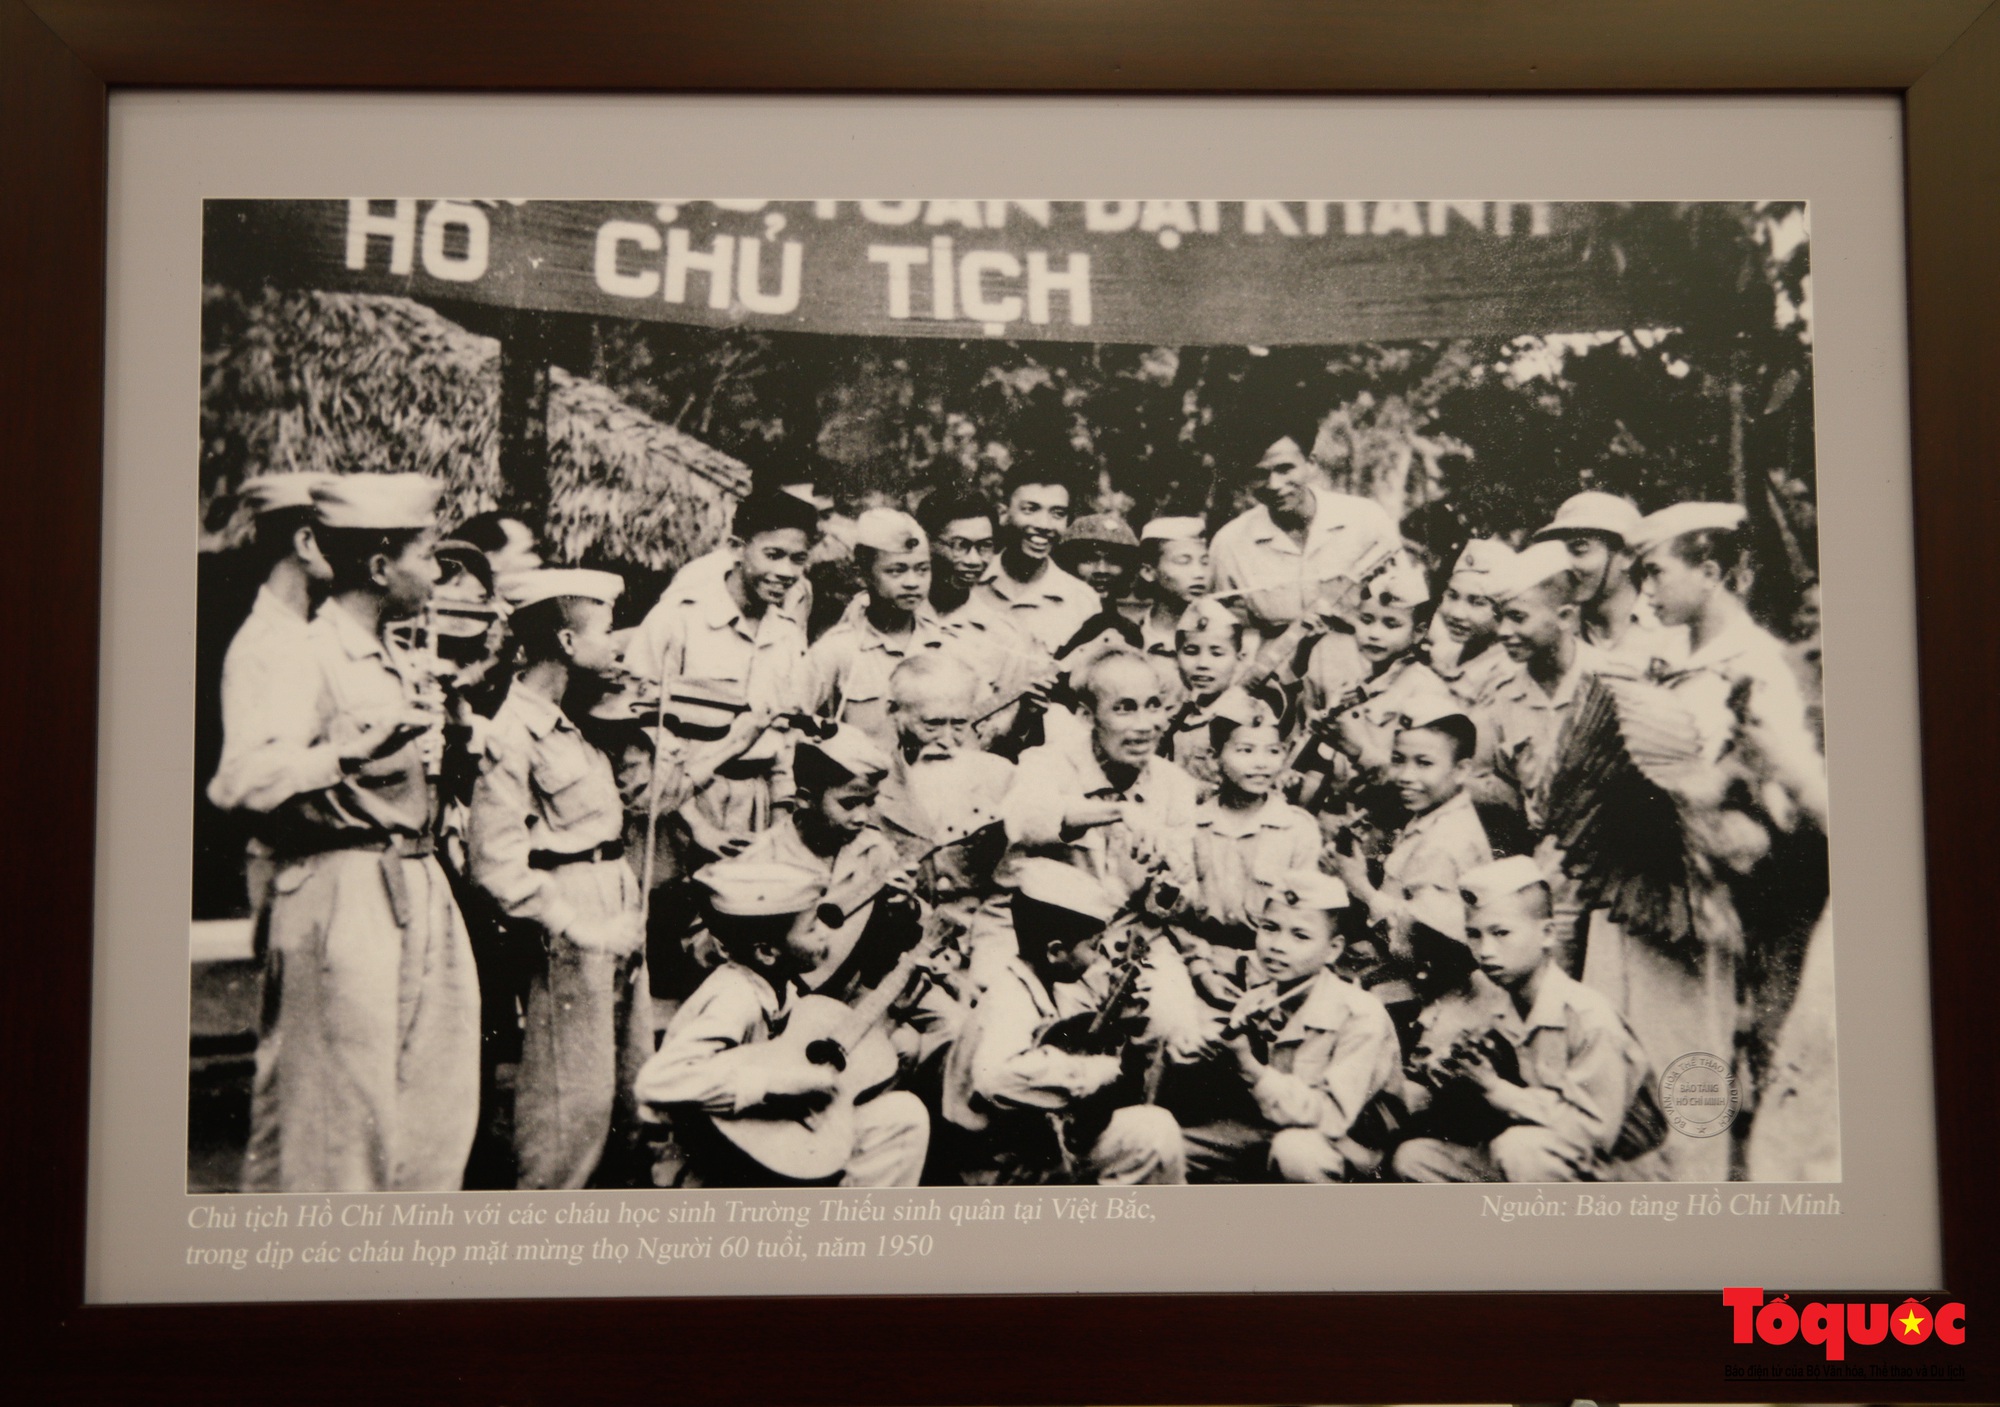 Lãnh đạo Bộ Văn hóa, Thể thao và Du lịch kiểm tra công tác chuẩn bị cho Triển lãm ảnh 80 năm Đề cương về Văn hóa Việt Nam - Ảnh 8.